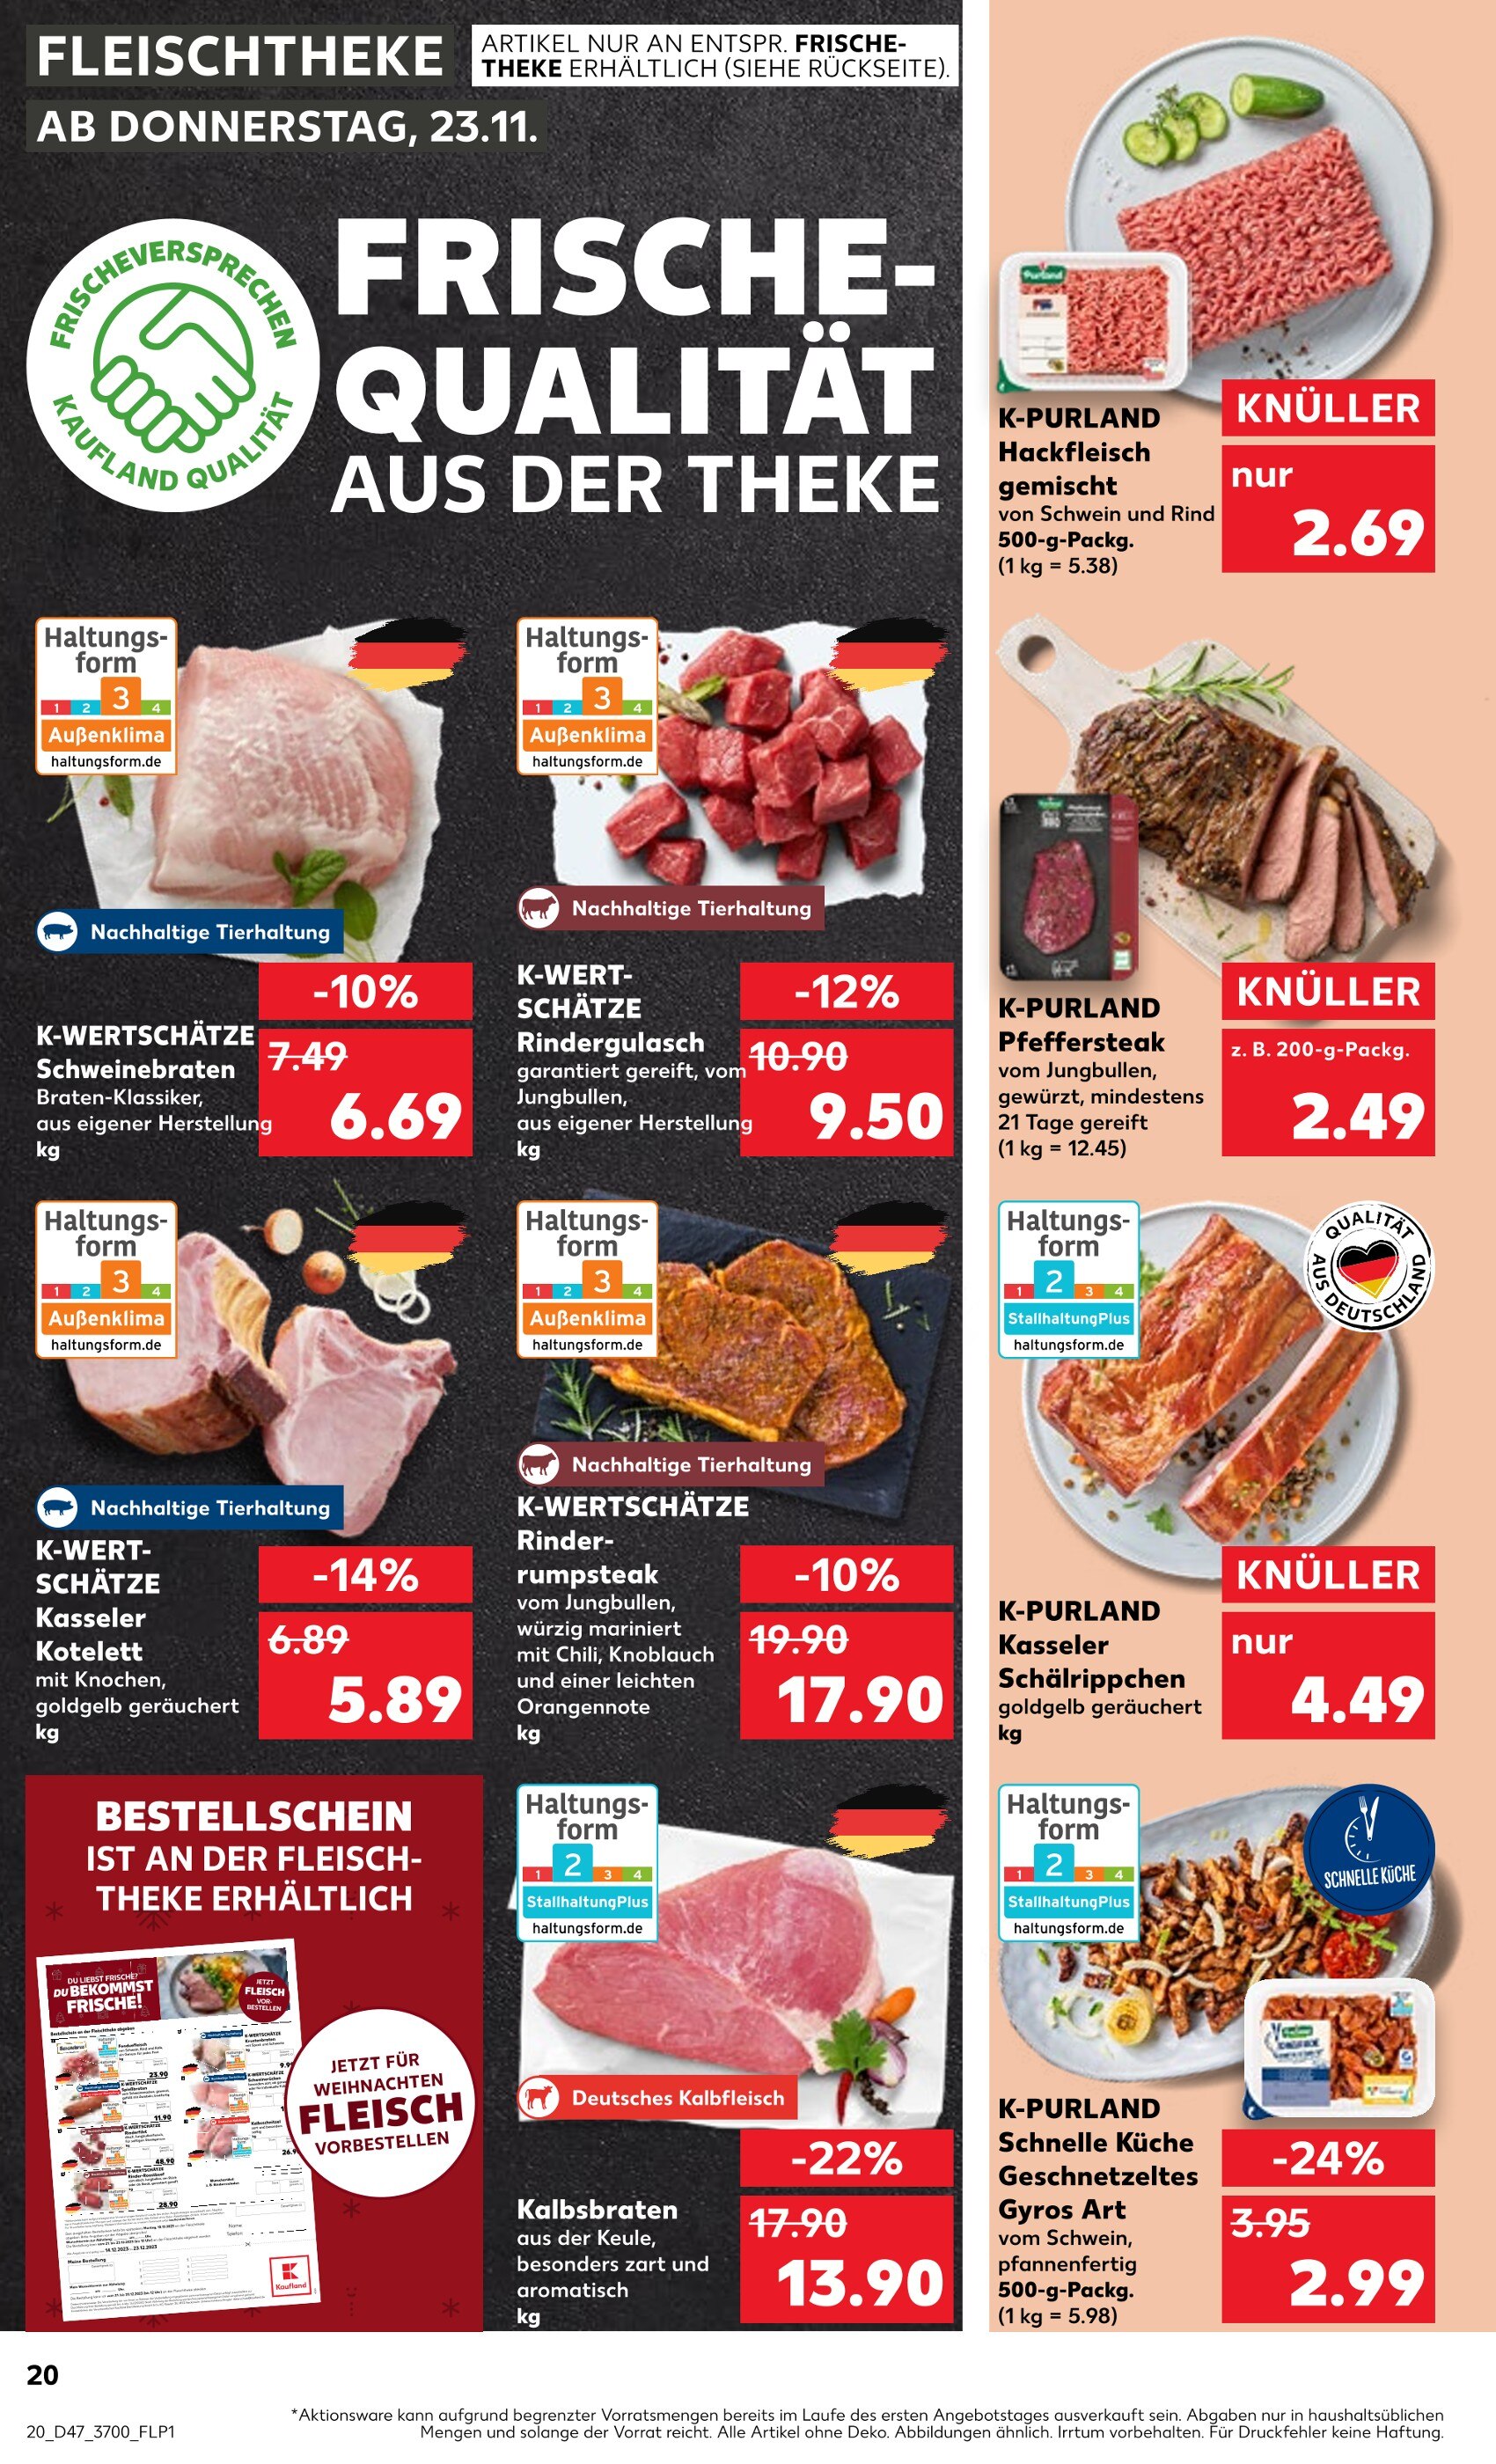 jetzt - in günstig Angebote kaufen! 🔥 Steak Rostock